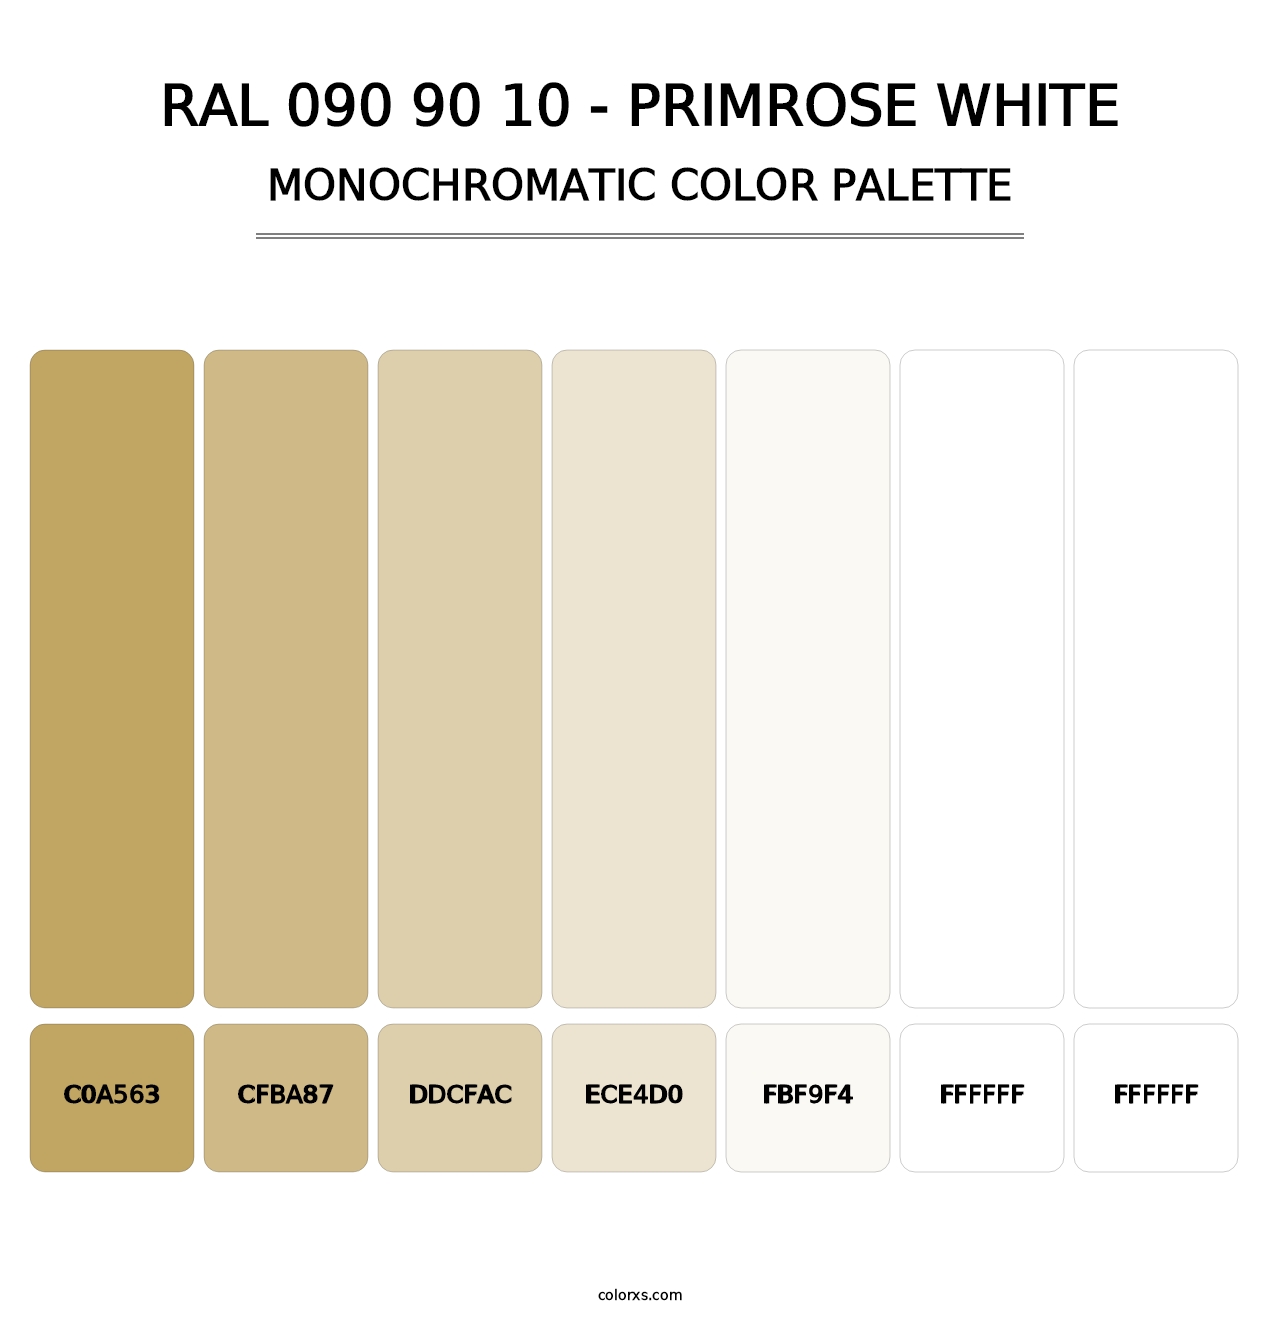 RAL 090 90 10 - Primrose White - Monochromatic Color Palette